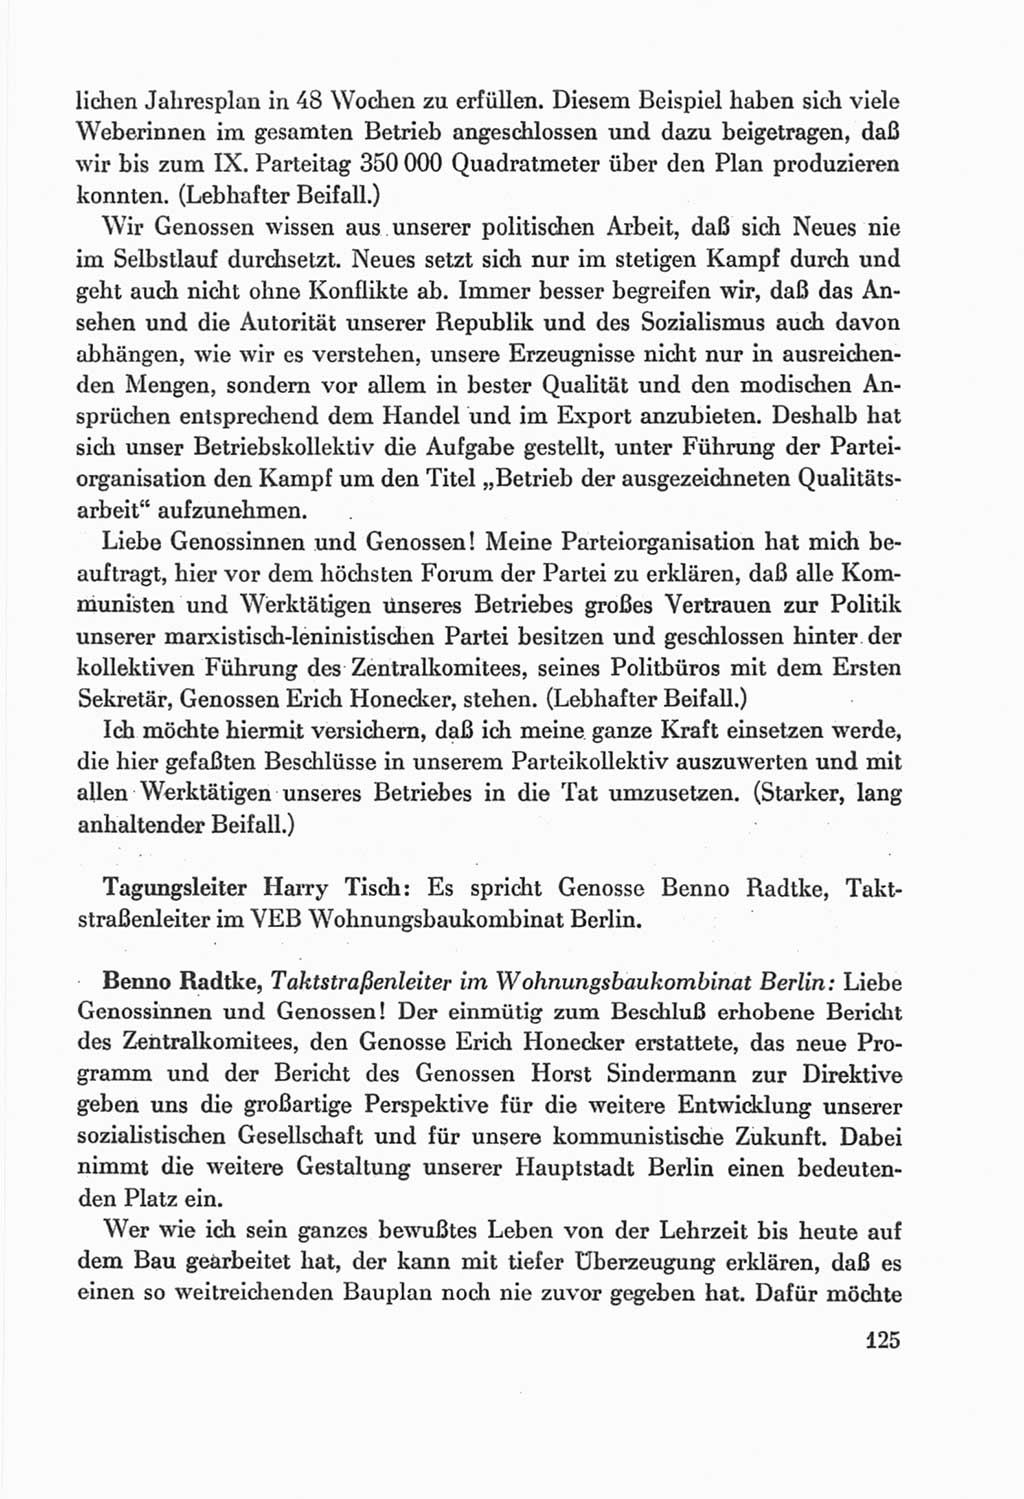 Protokoll der Verhandlungen des Ⅸ. Parteitages der Sozialistischen Einheitspartei Deutschlands (SED) [Deutsche Demokratische Republik (DDR)] 1976, Band 2, Seite 125 (Prot. Verh. Ⅸ. PT SED DDR 1976, Bd. 2, S. 125)